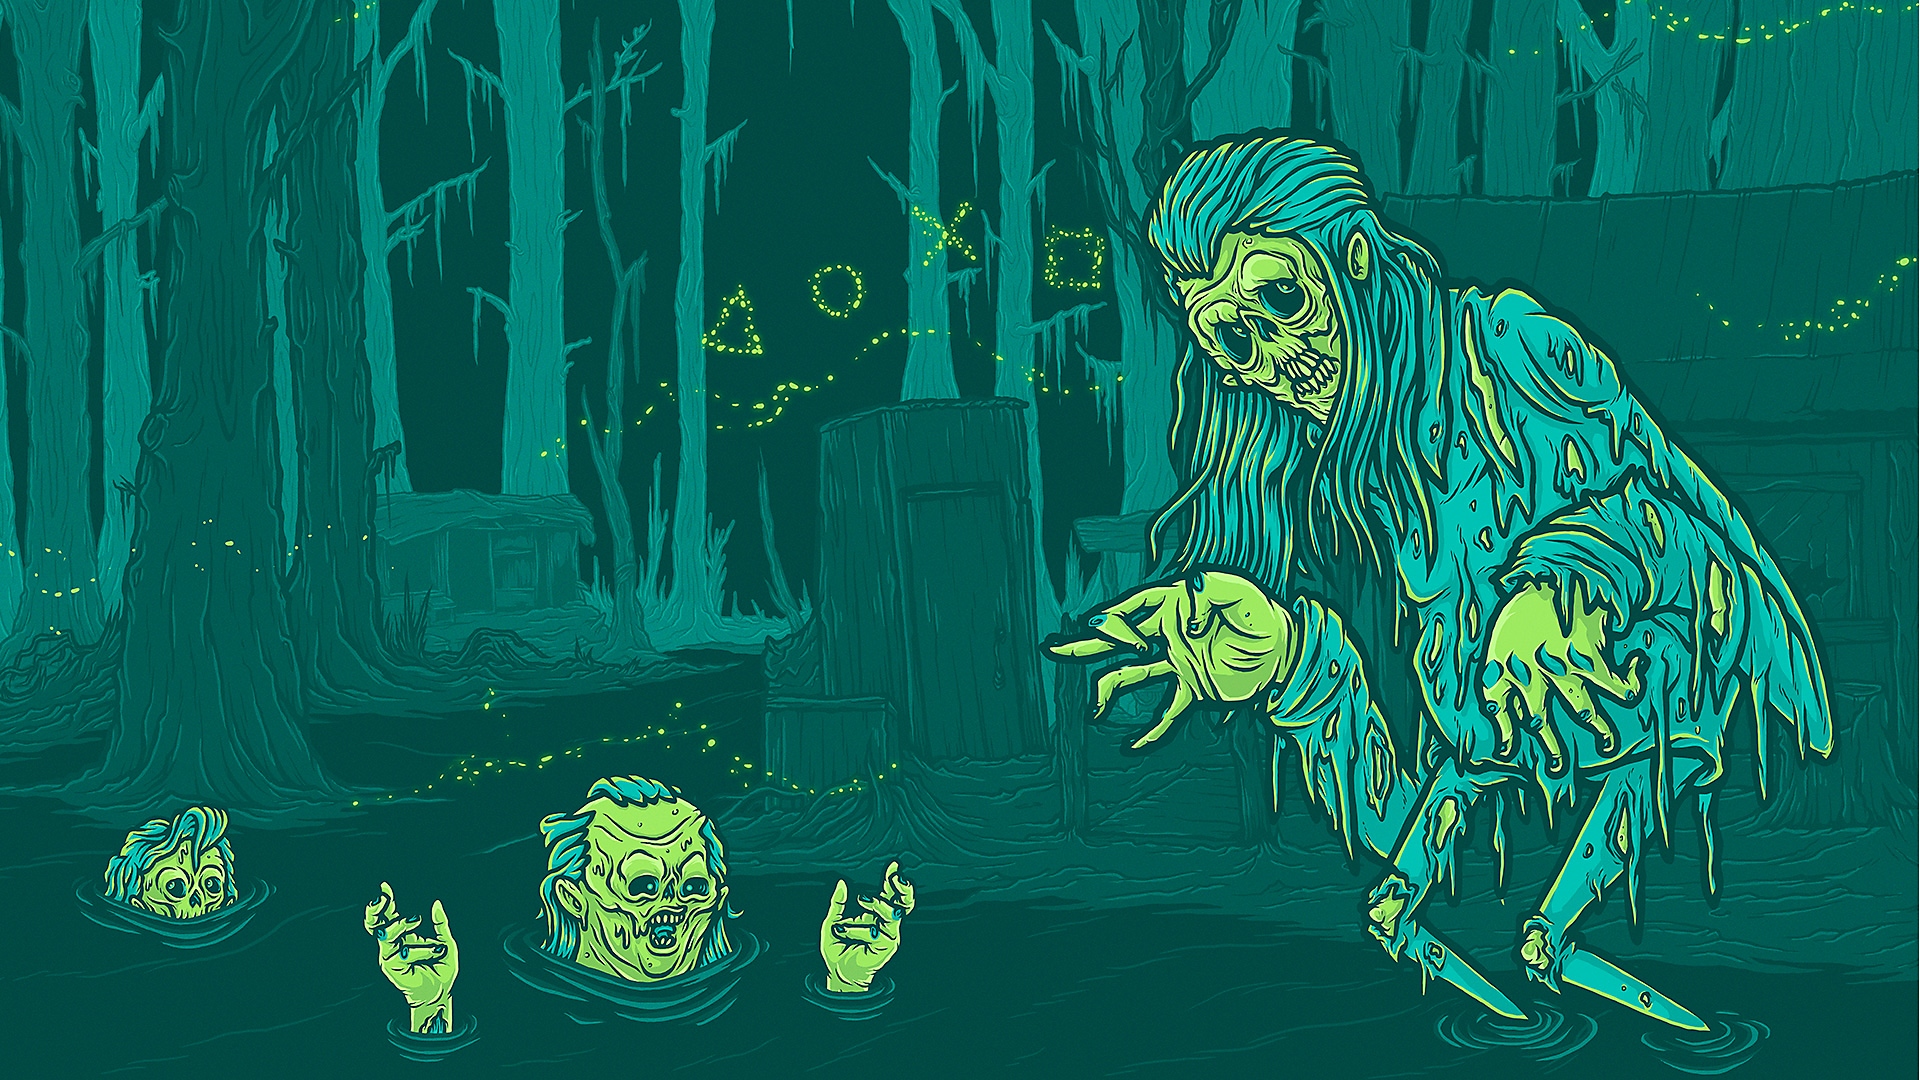 Arte original - Os melhores jogos de terror para PS4 e PS5, com renderização estilizada de diversos ghouls saindo de um pântano.